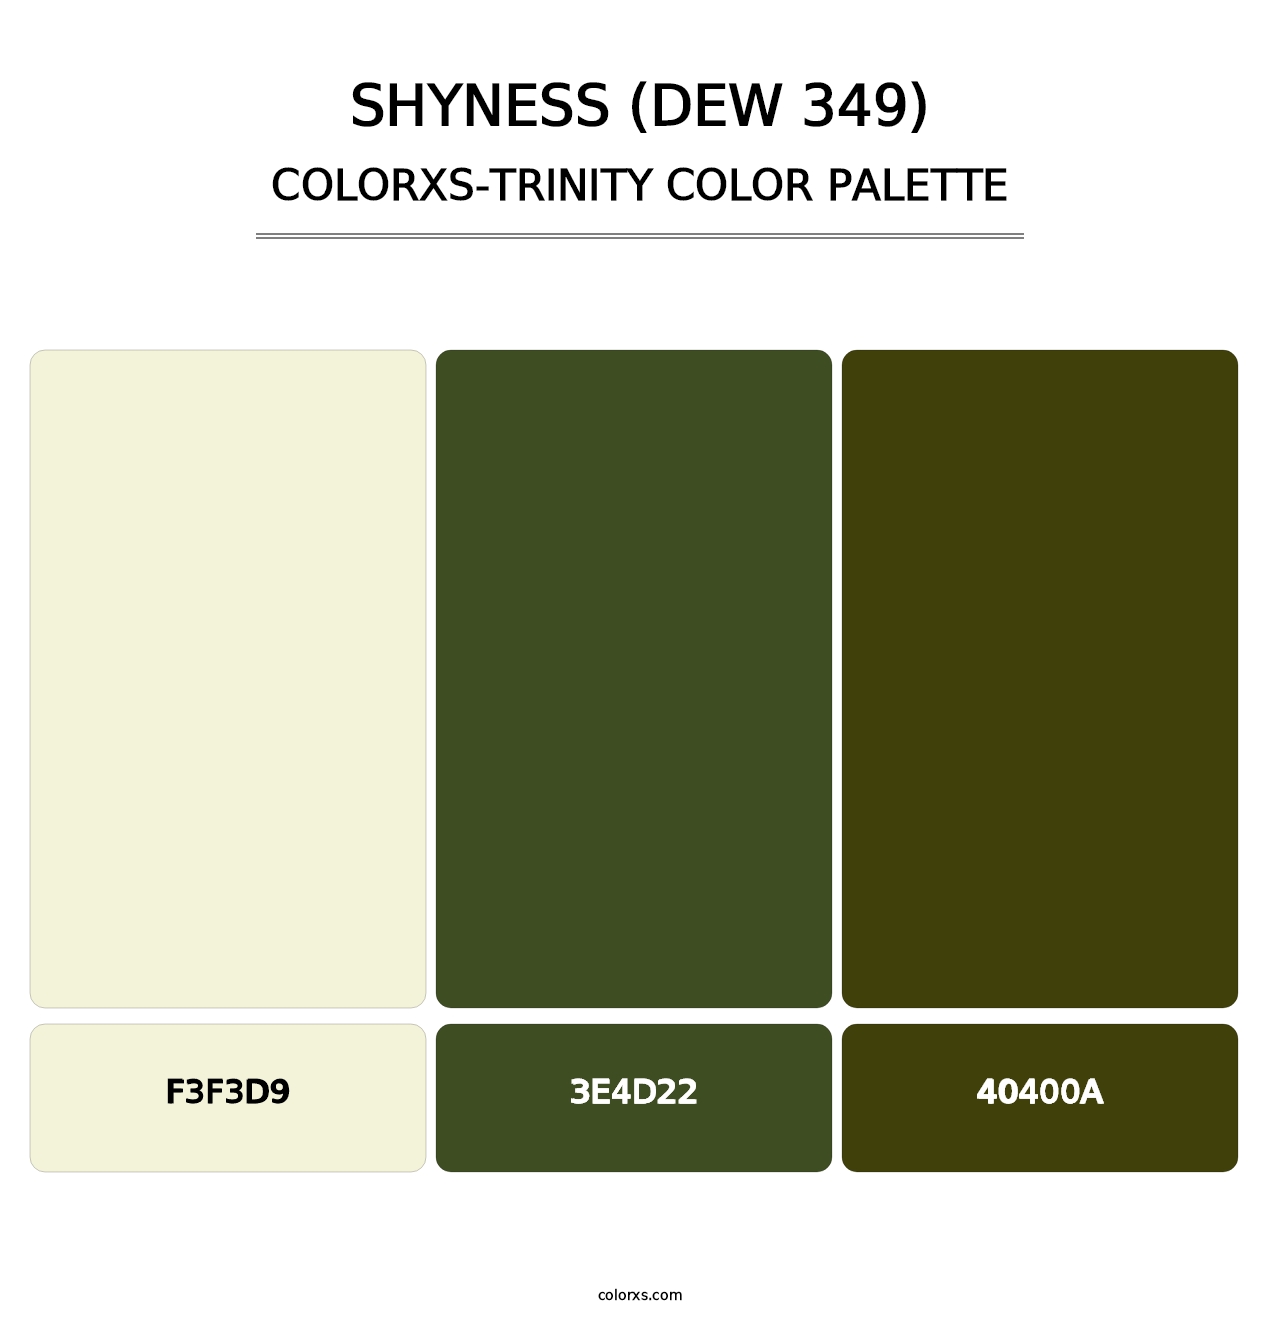 Shyness (DEW 349) - Colorxs Trinity Palette